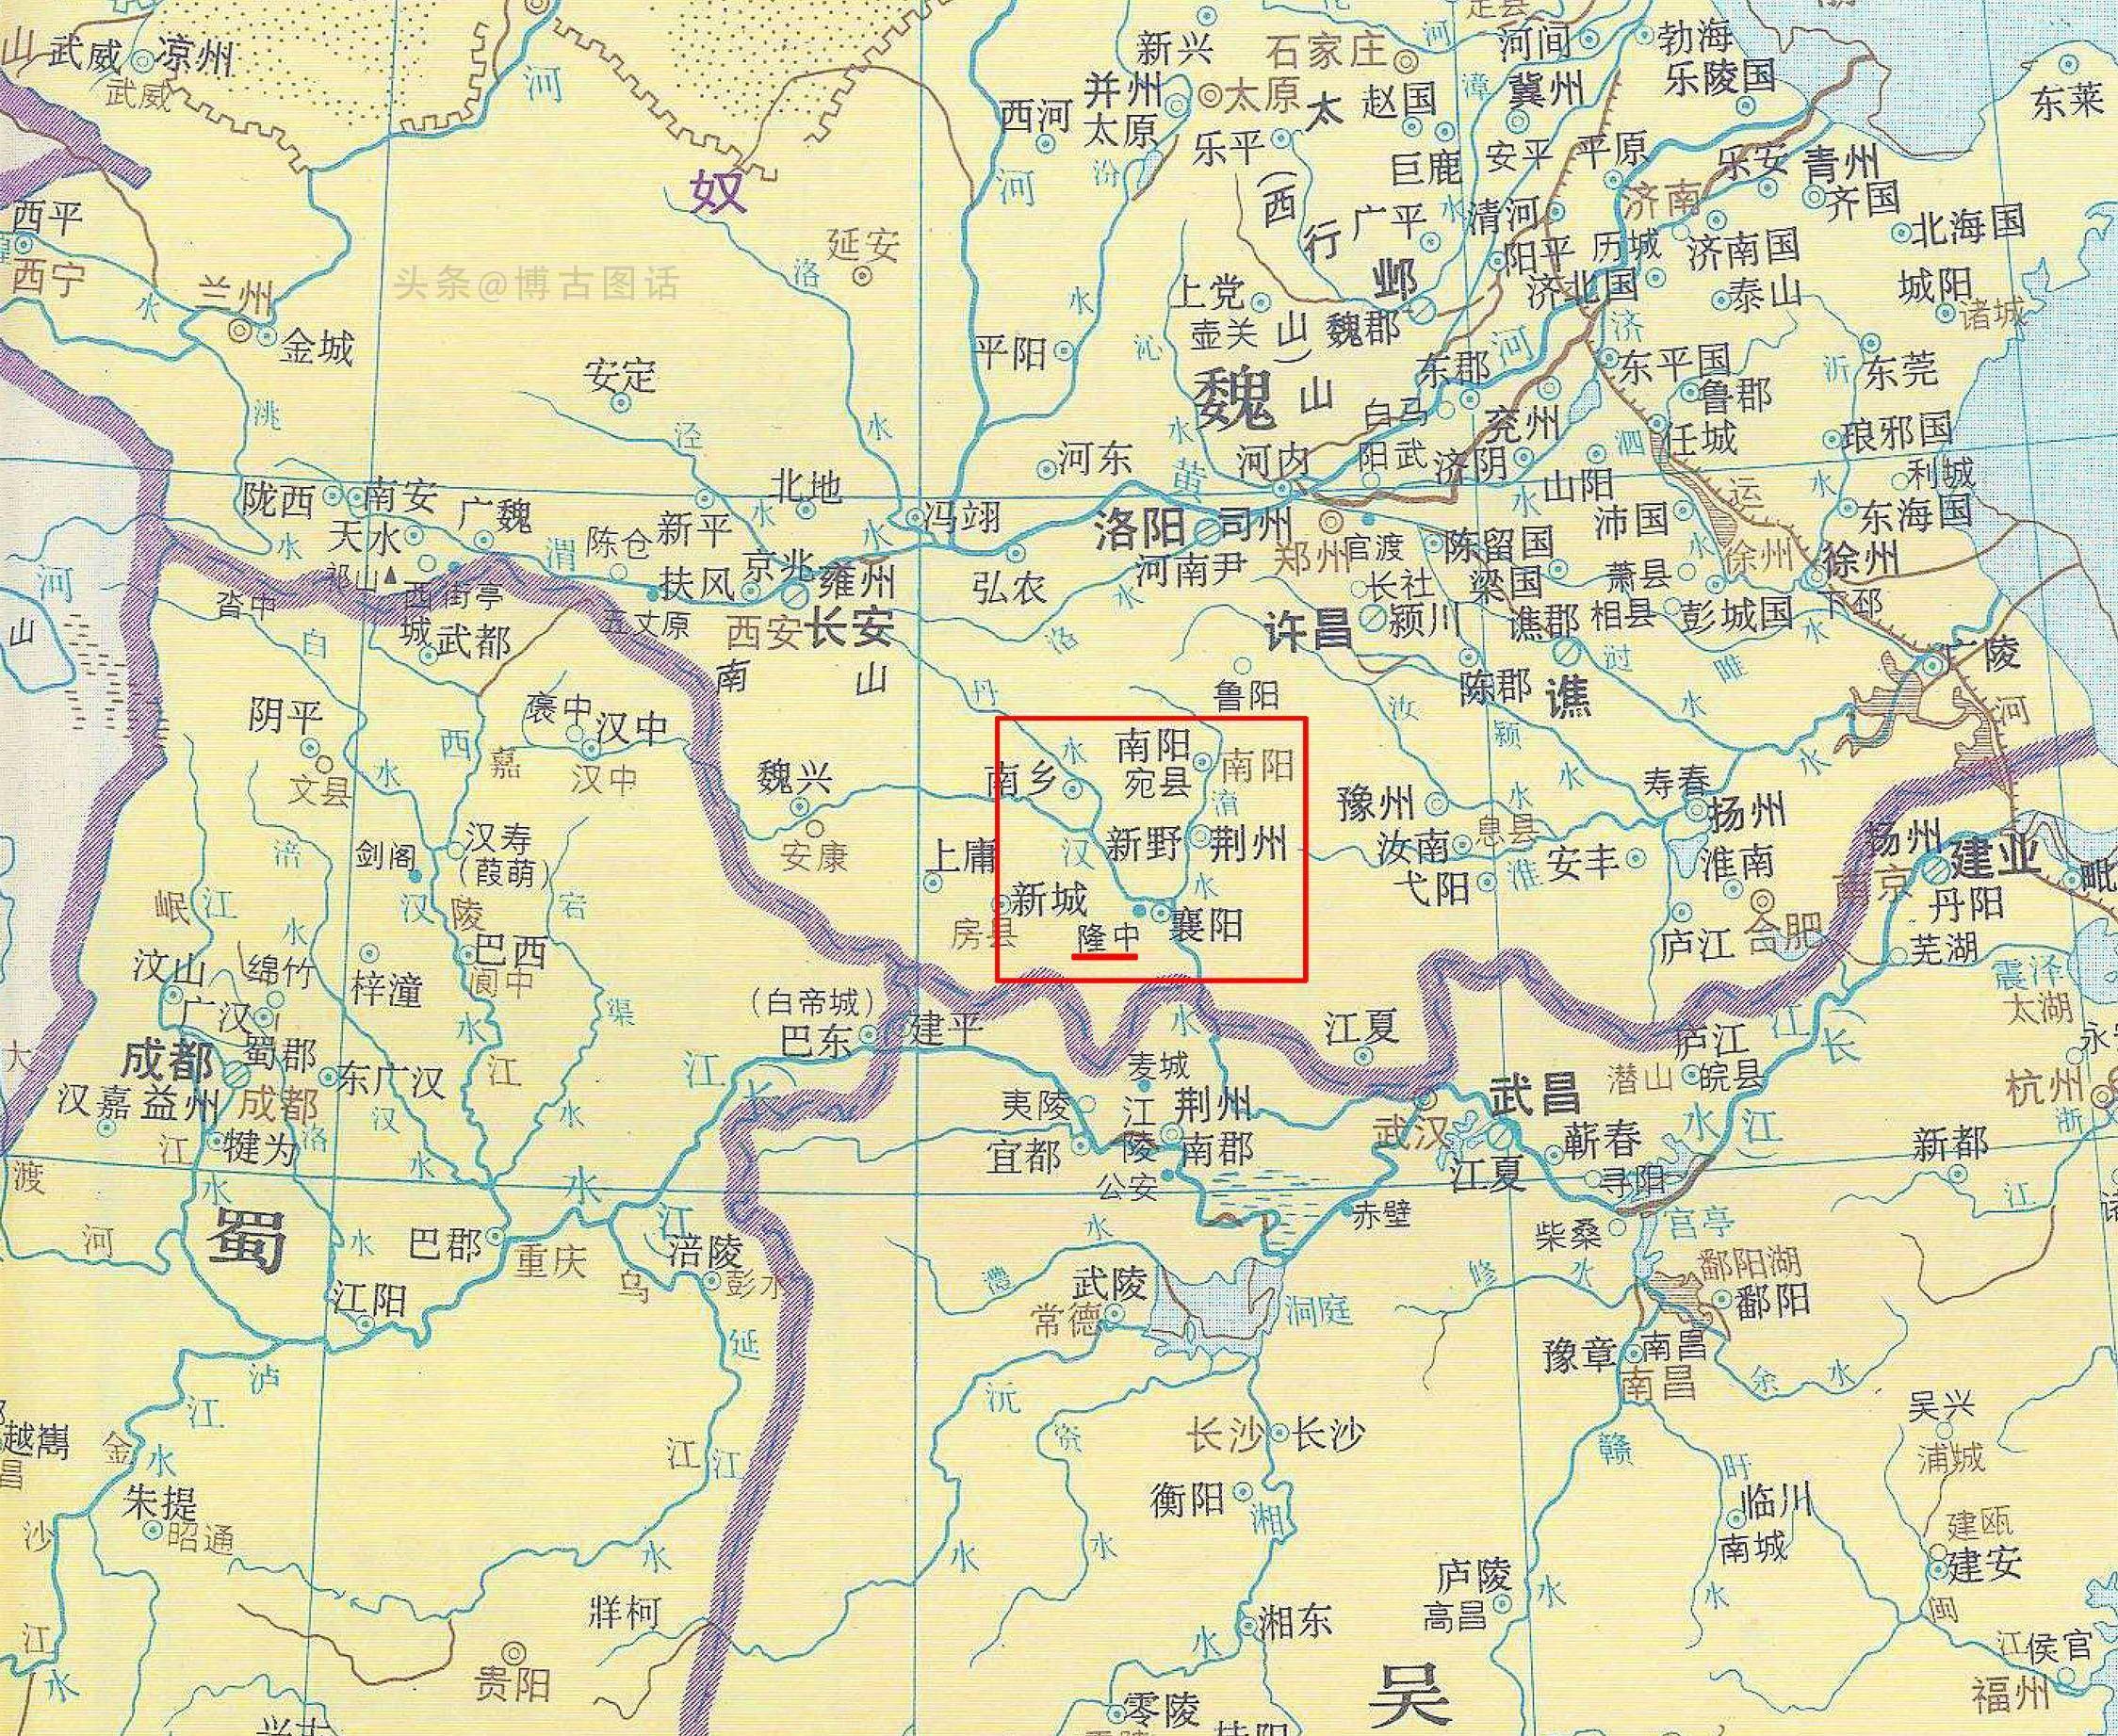 三国志5 地图图片